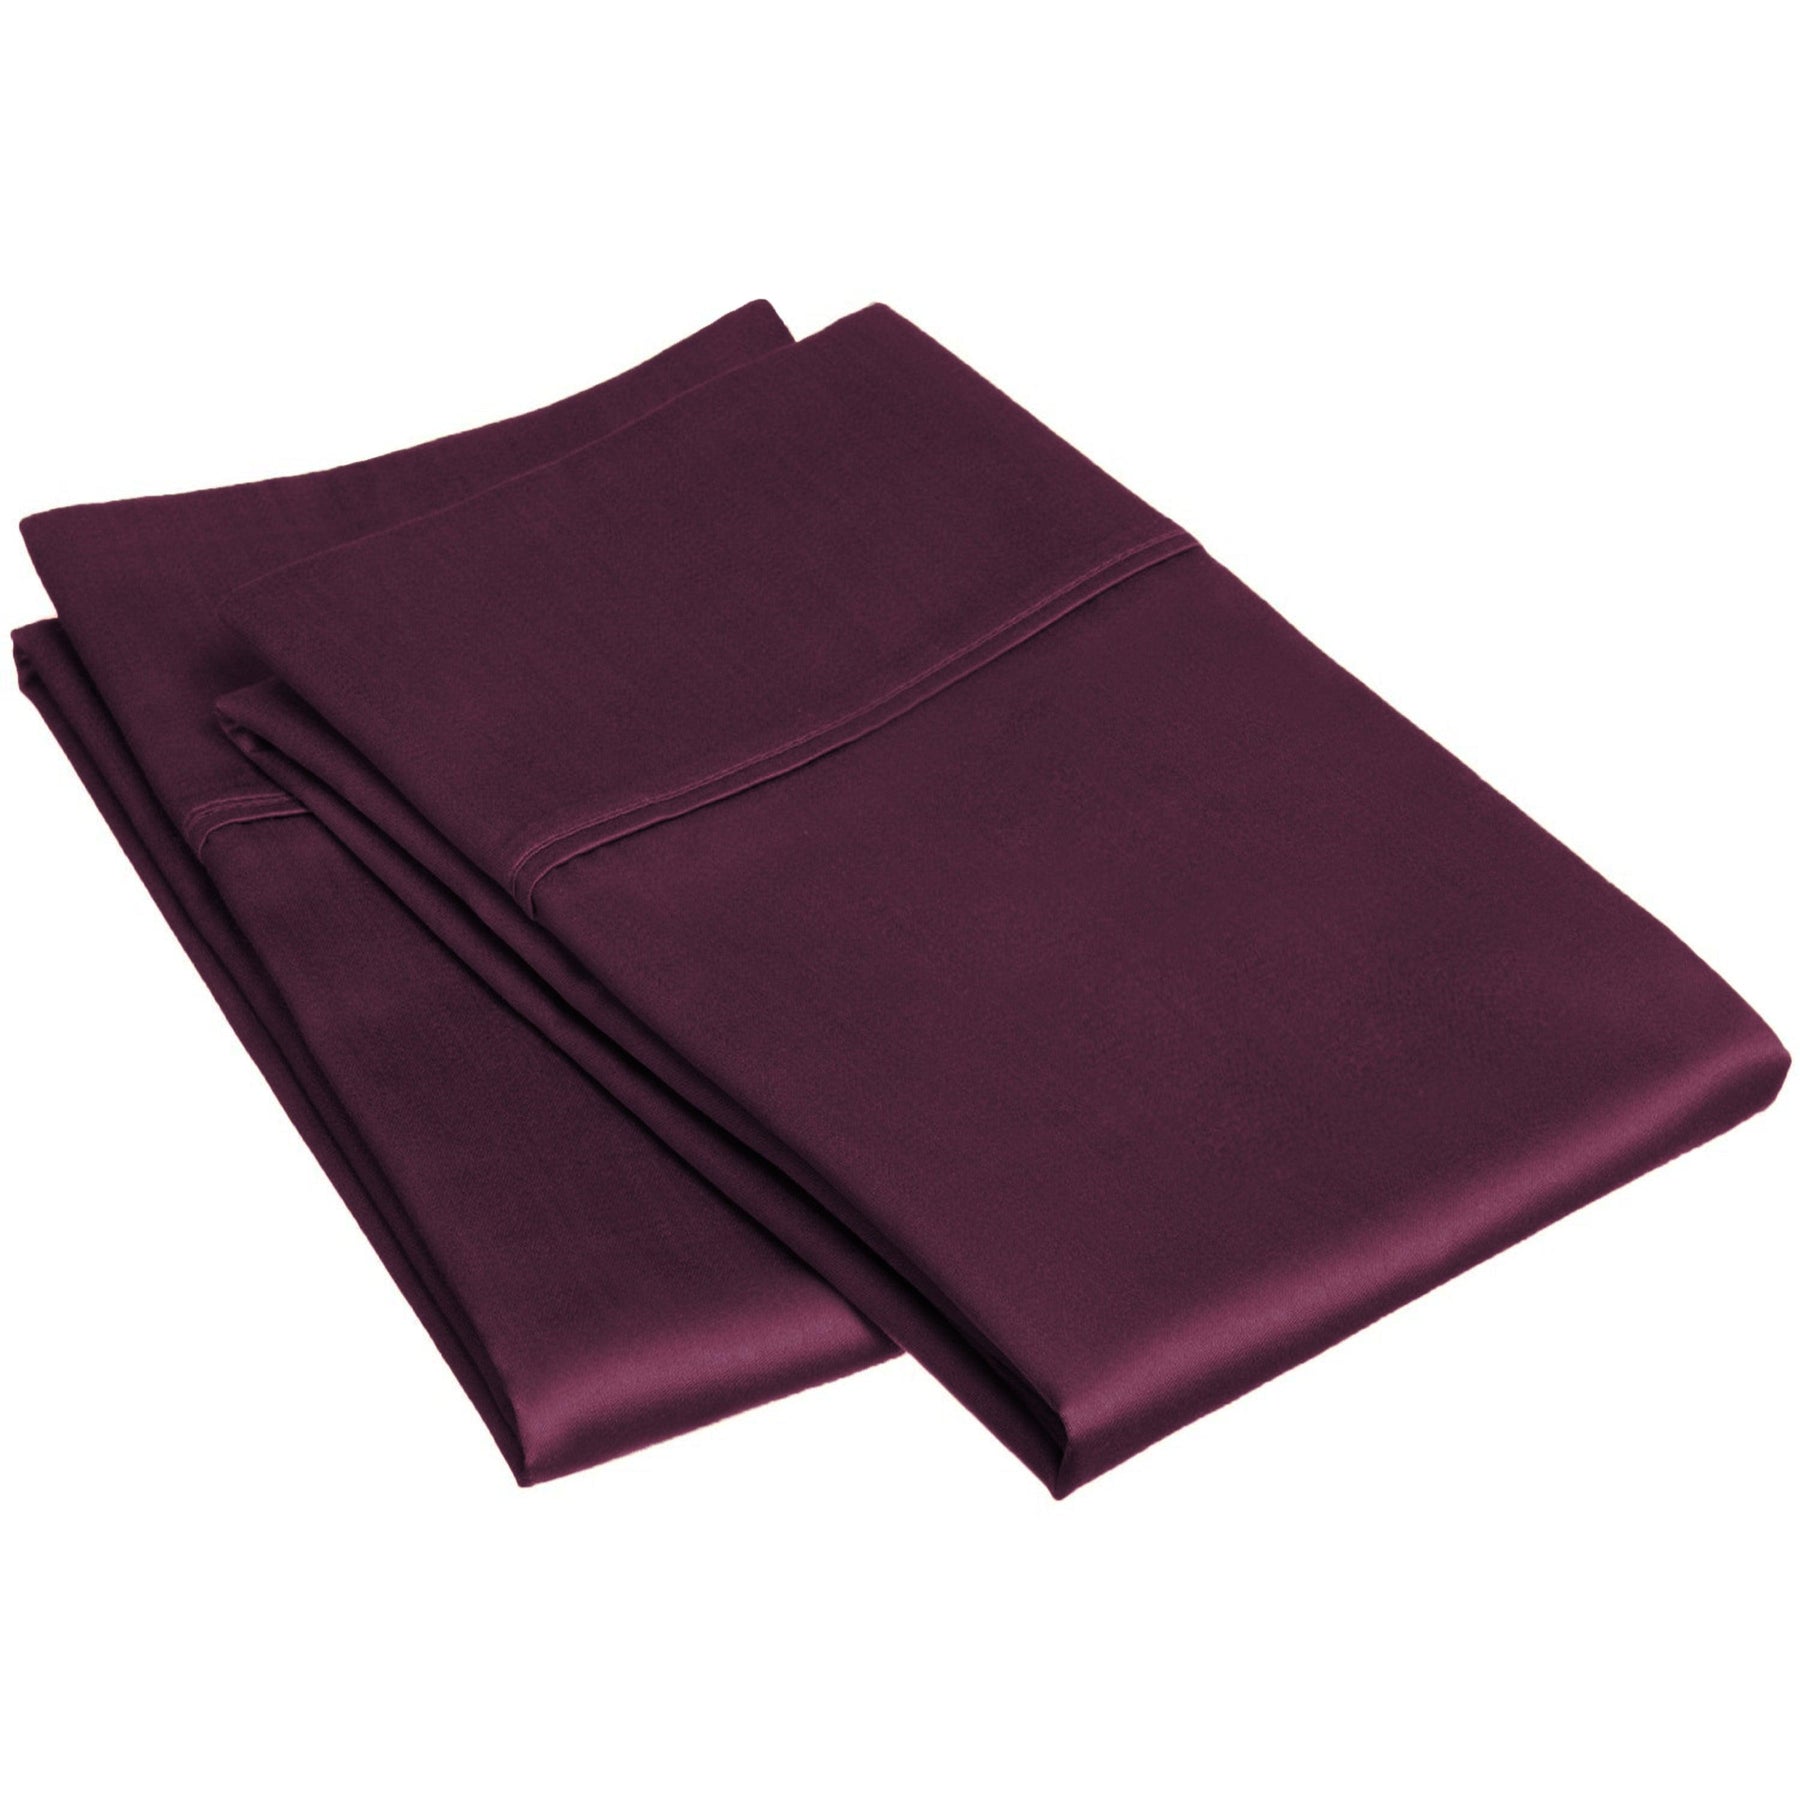 Wrinkle Resistant Egyptian Cotton 2-Piece Pillowcase Set -  Plum